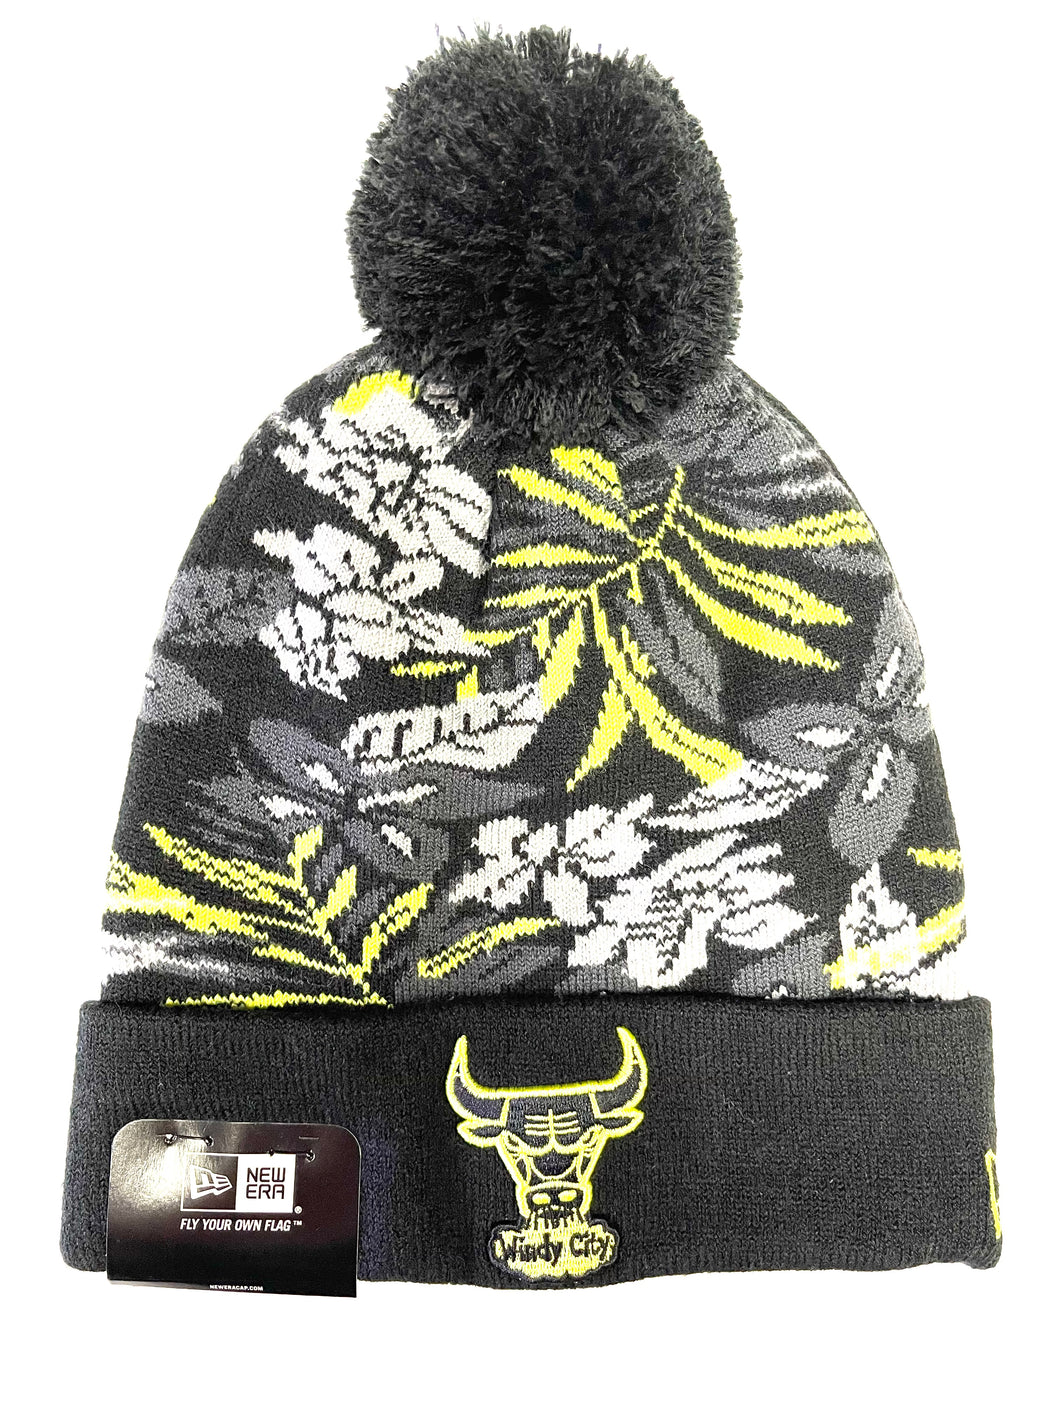 New Era NBA Chicago Bulls Snow Tropicals CYG / BLK Knit Hat